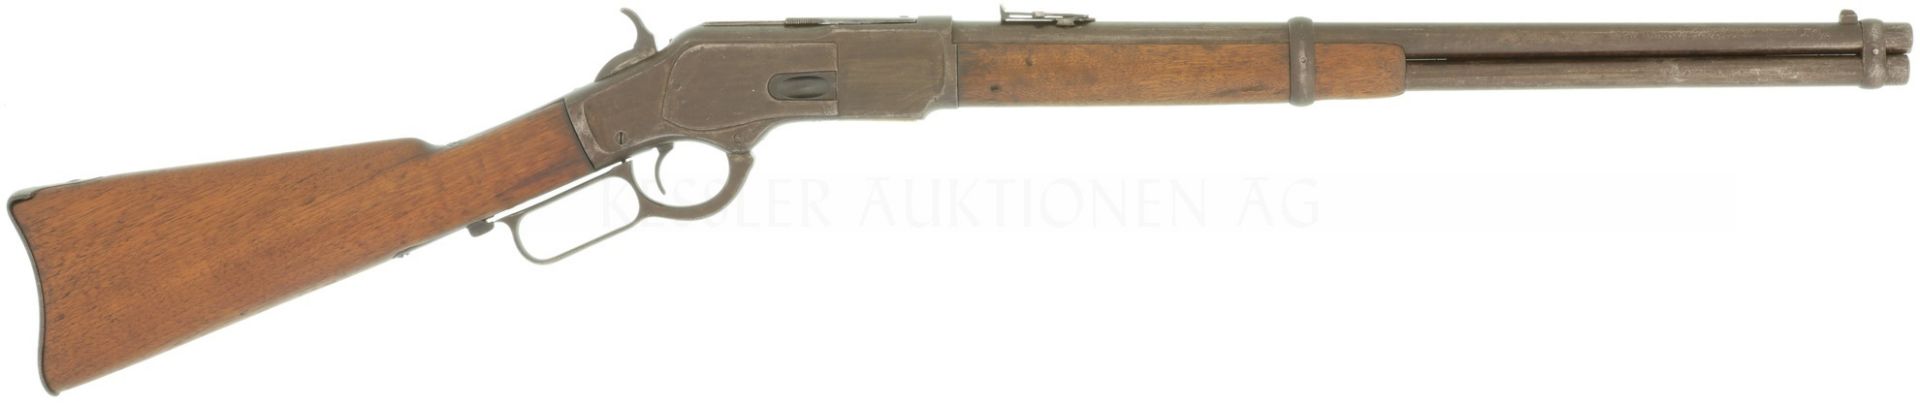 Unterhebelrepetierbüchse, Winchester Mod. 1873, Kal. .44-40